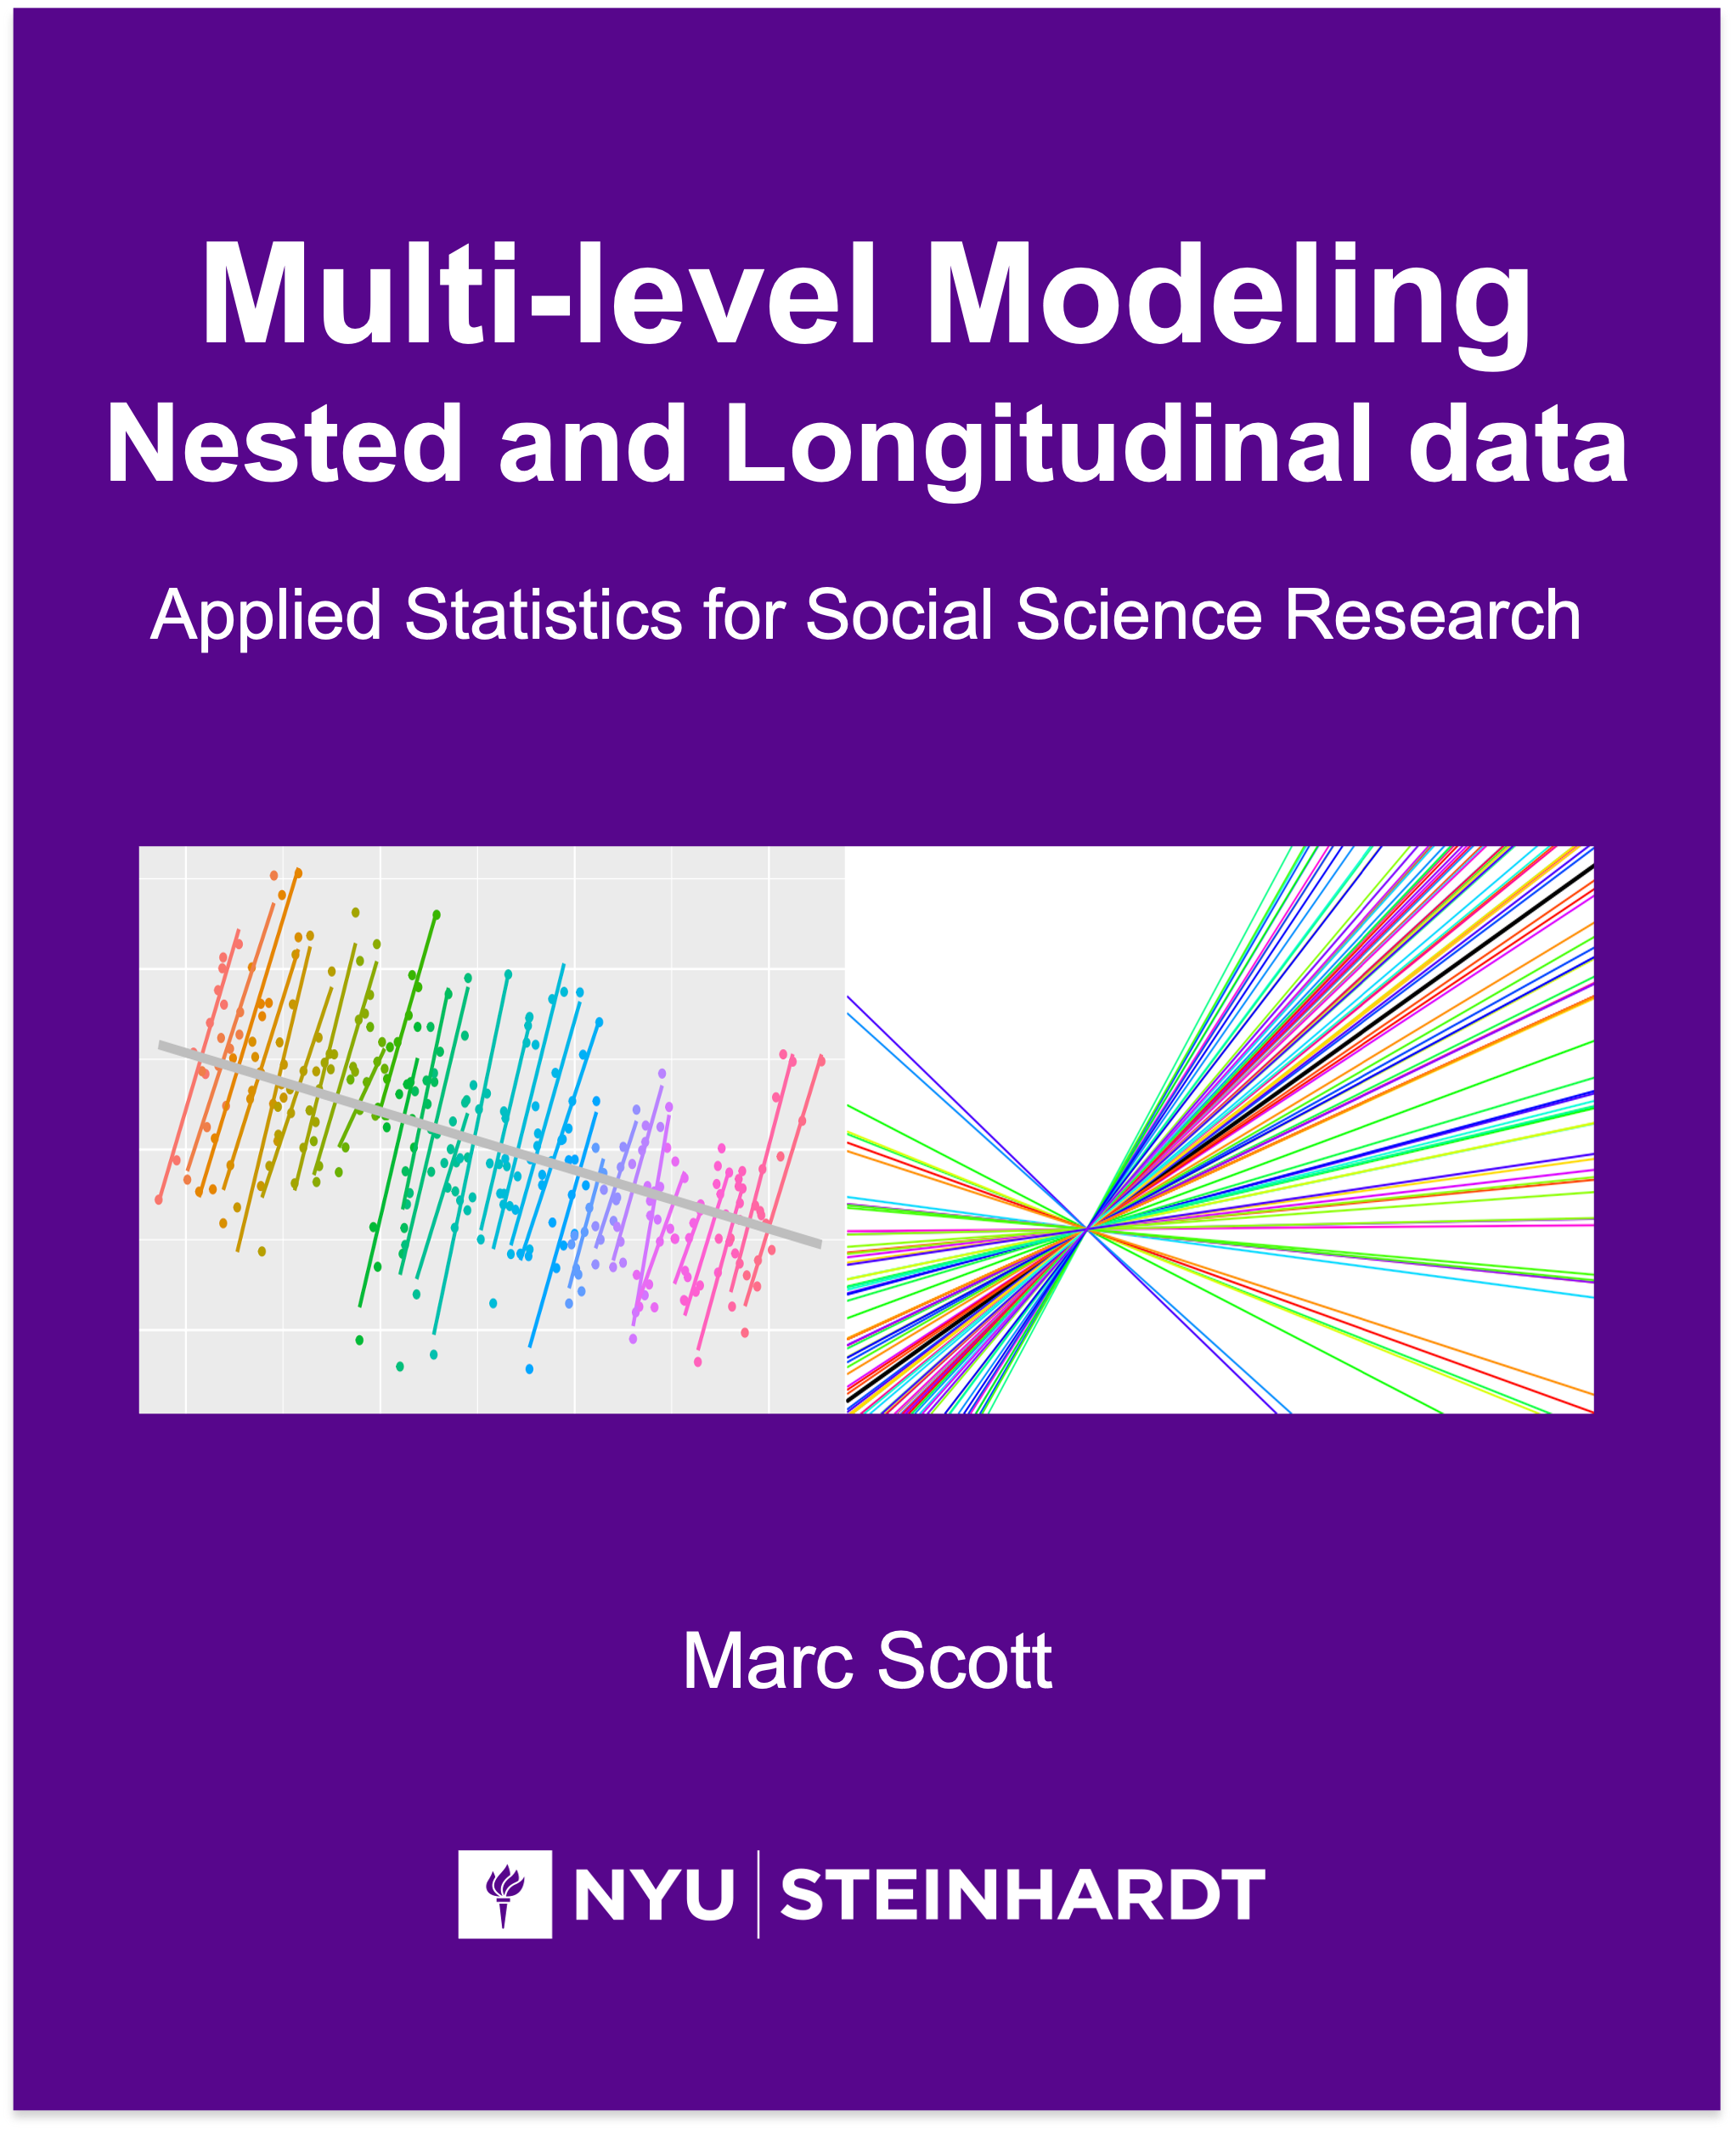 Multi-level Modeling: Nested and Longitudinal data